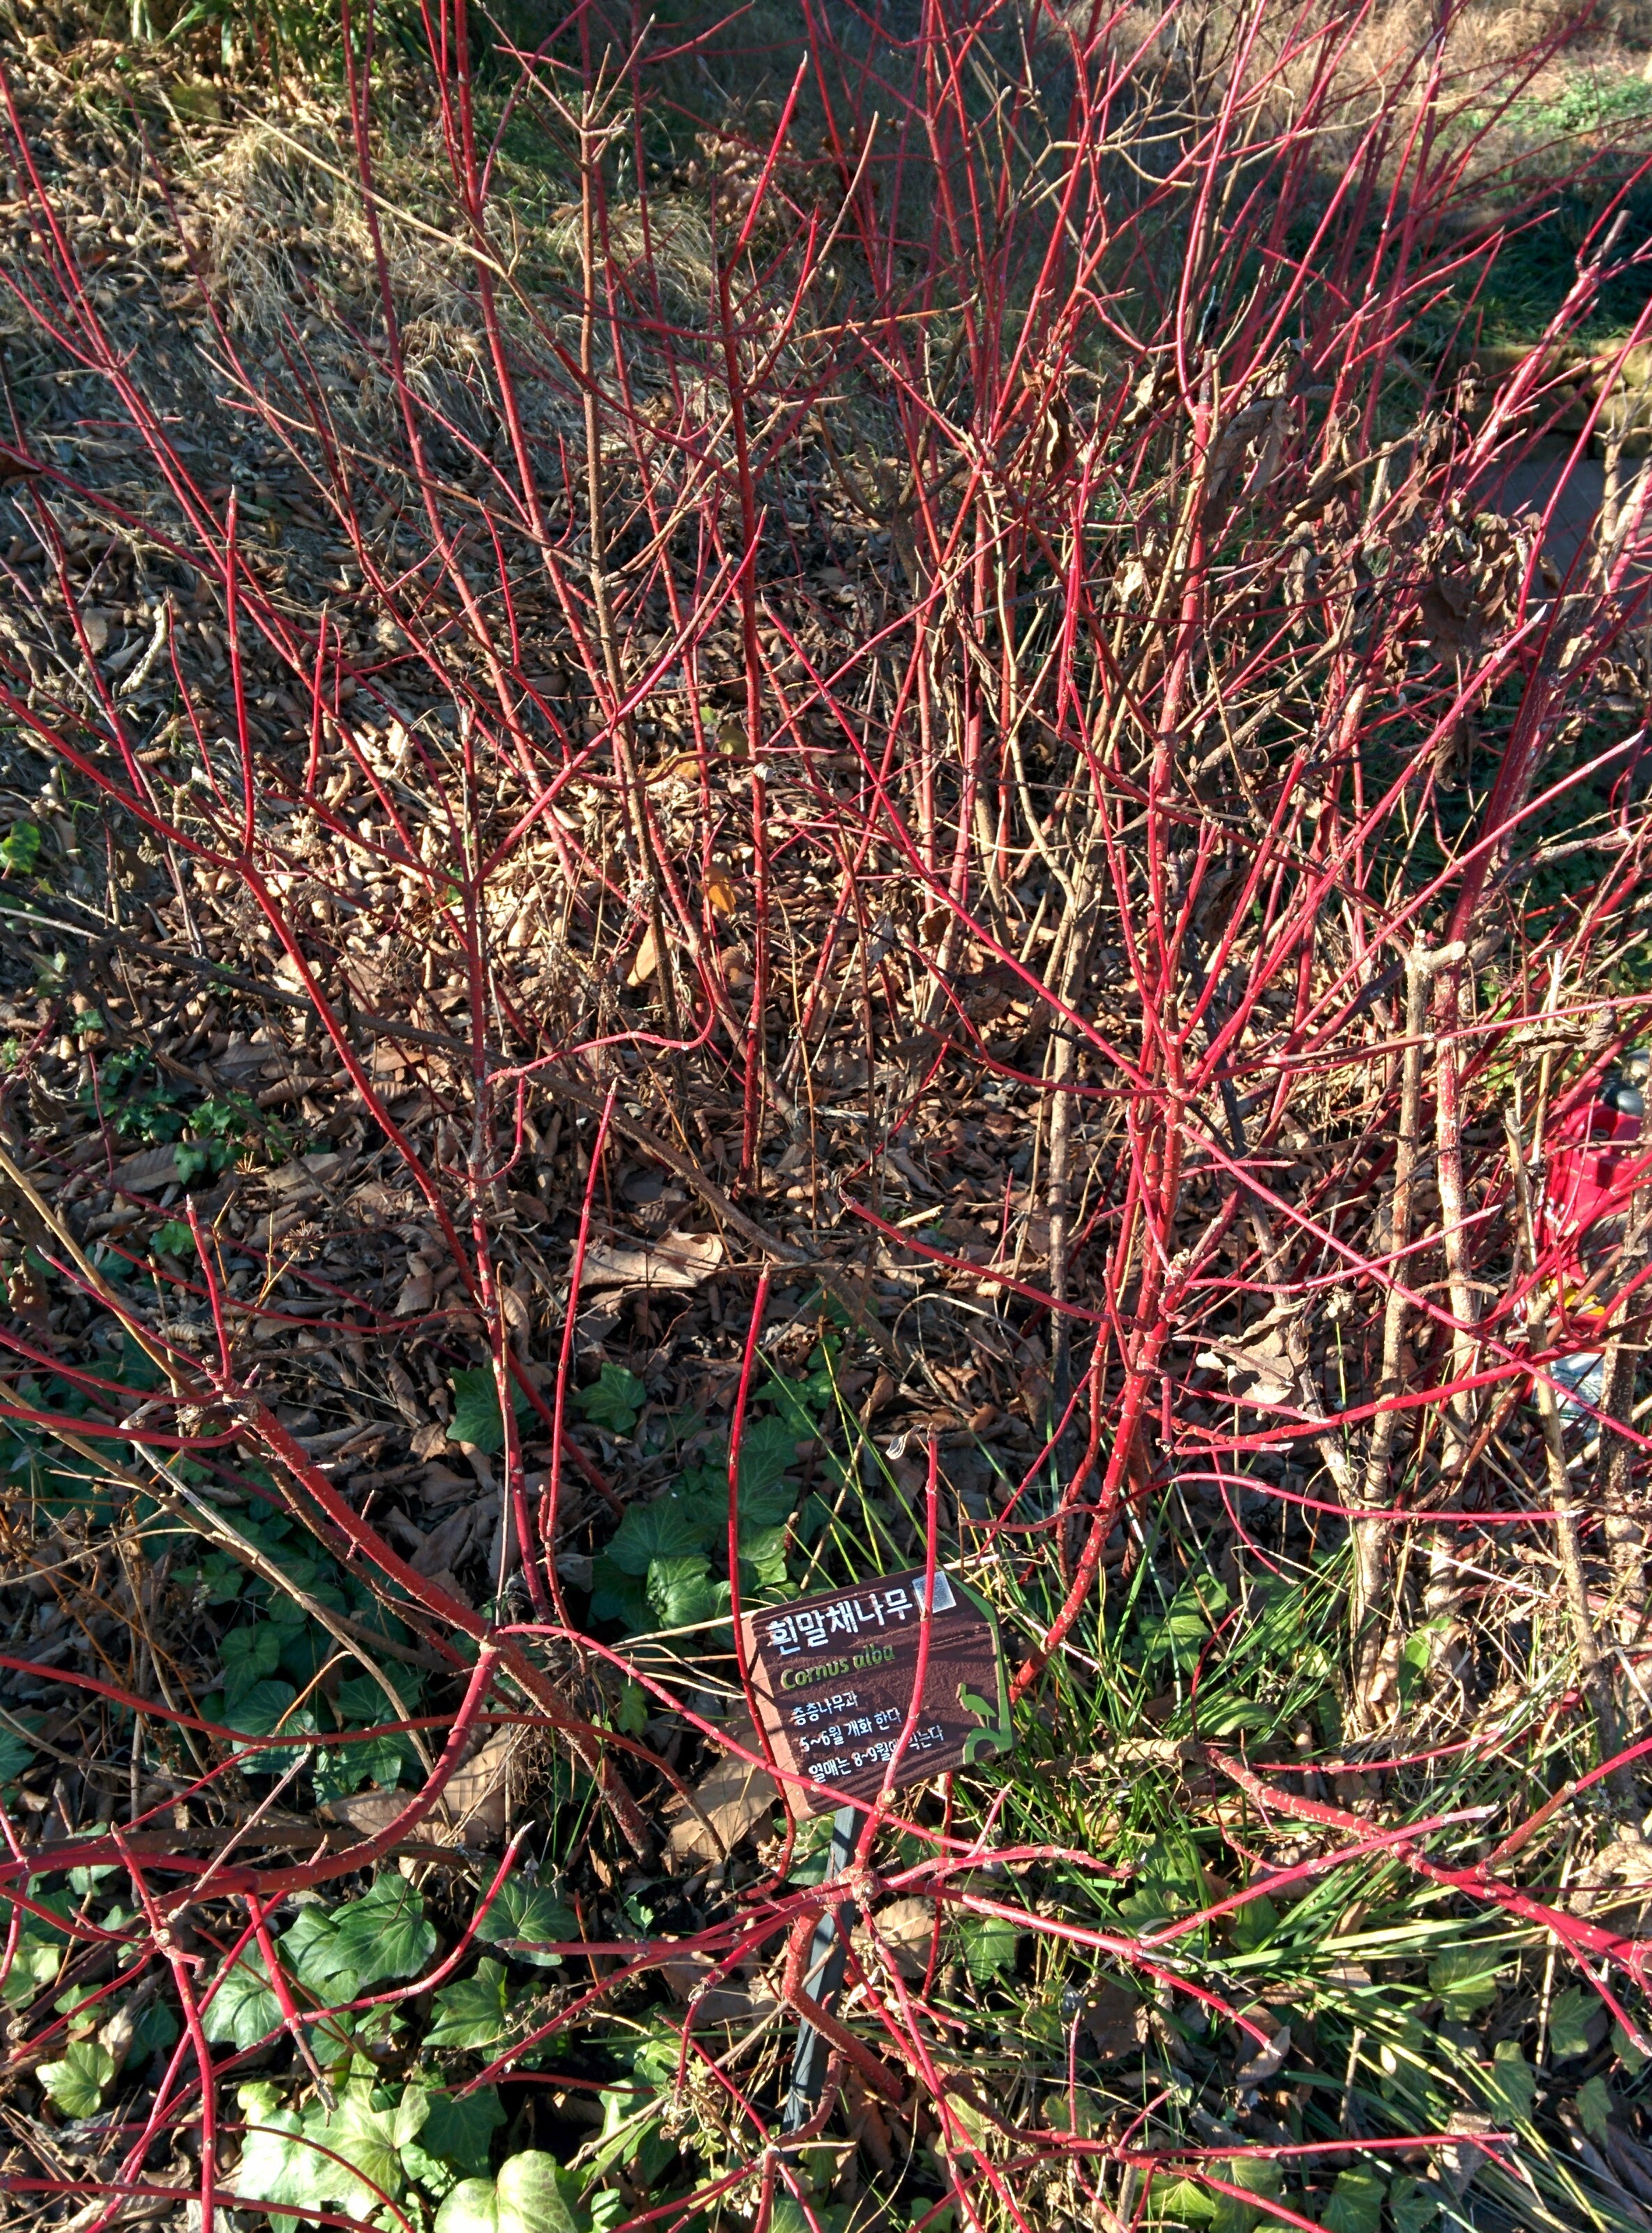 IMG_20151228_140745.jpg 붉은색 줄기가 특이한 겨울의 흰말채나무